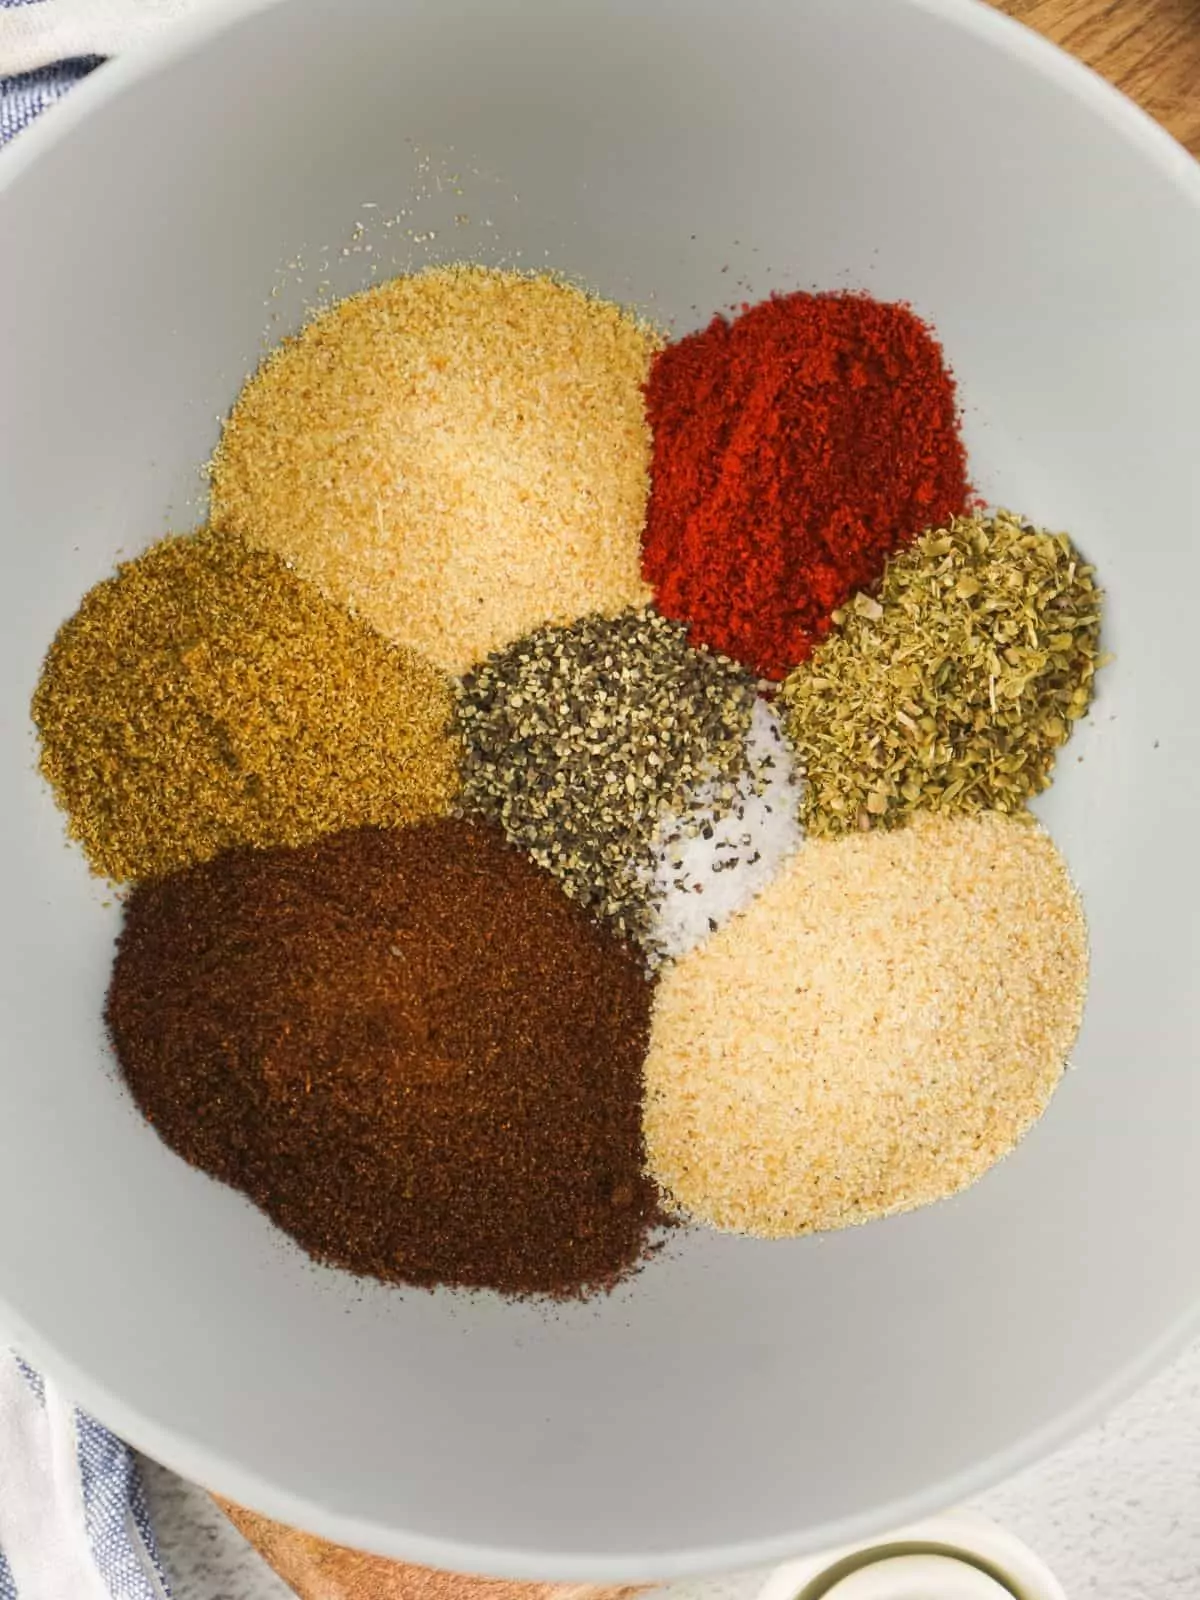 Ingredients for seasoning mix in bowl.